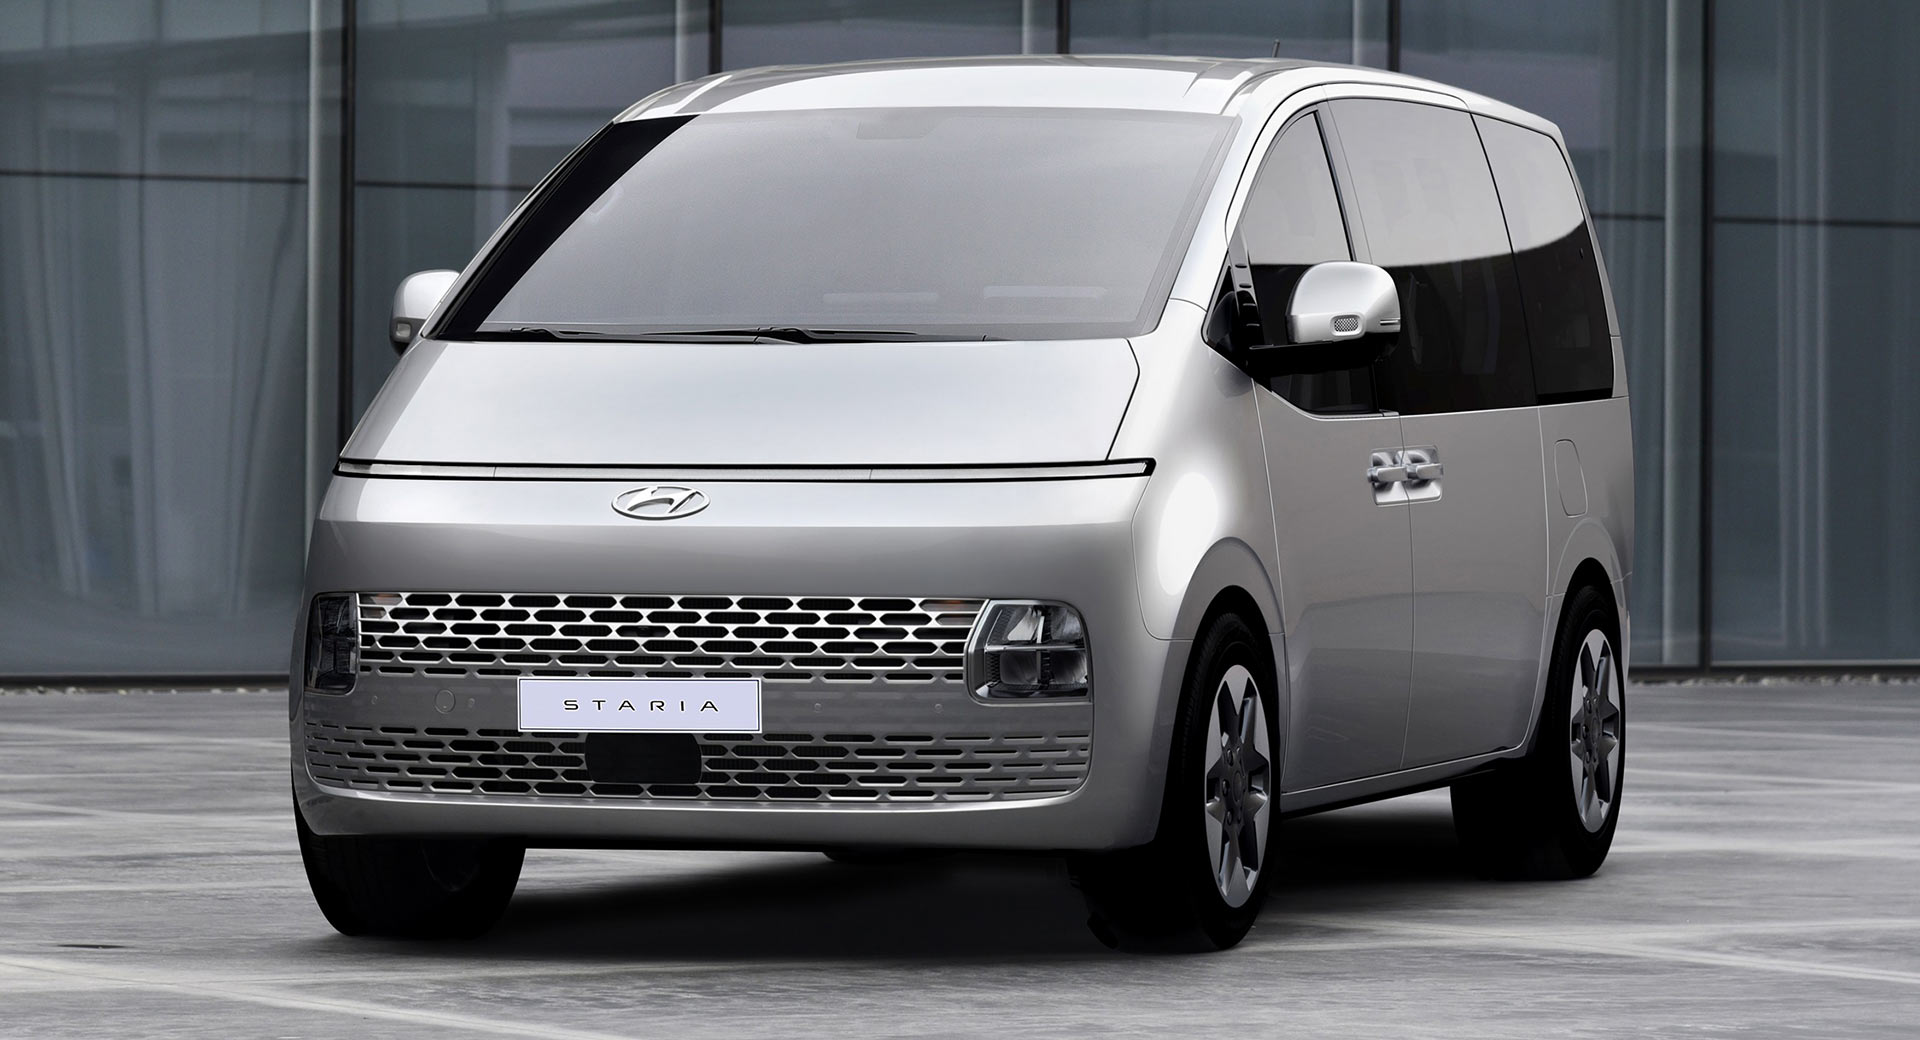 The Hyundai H1 – a practical choice